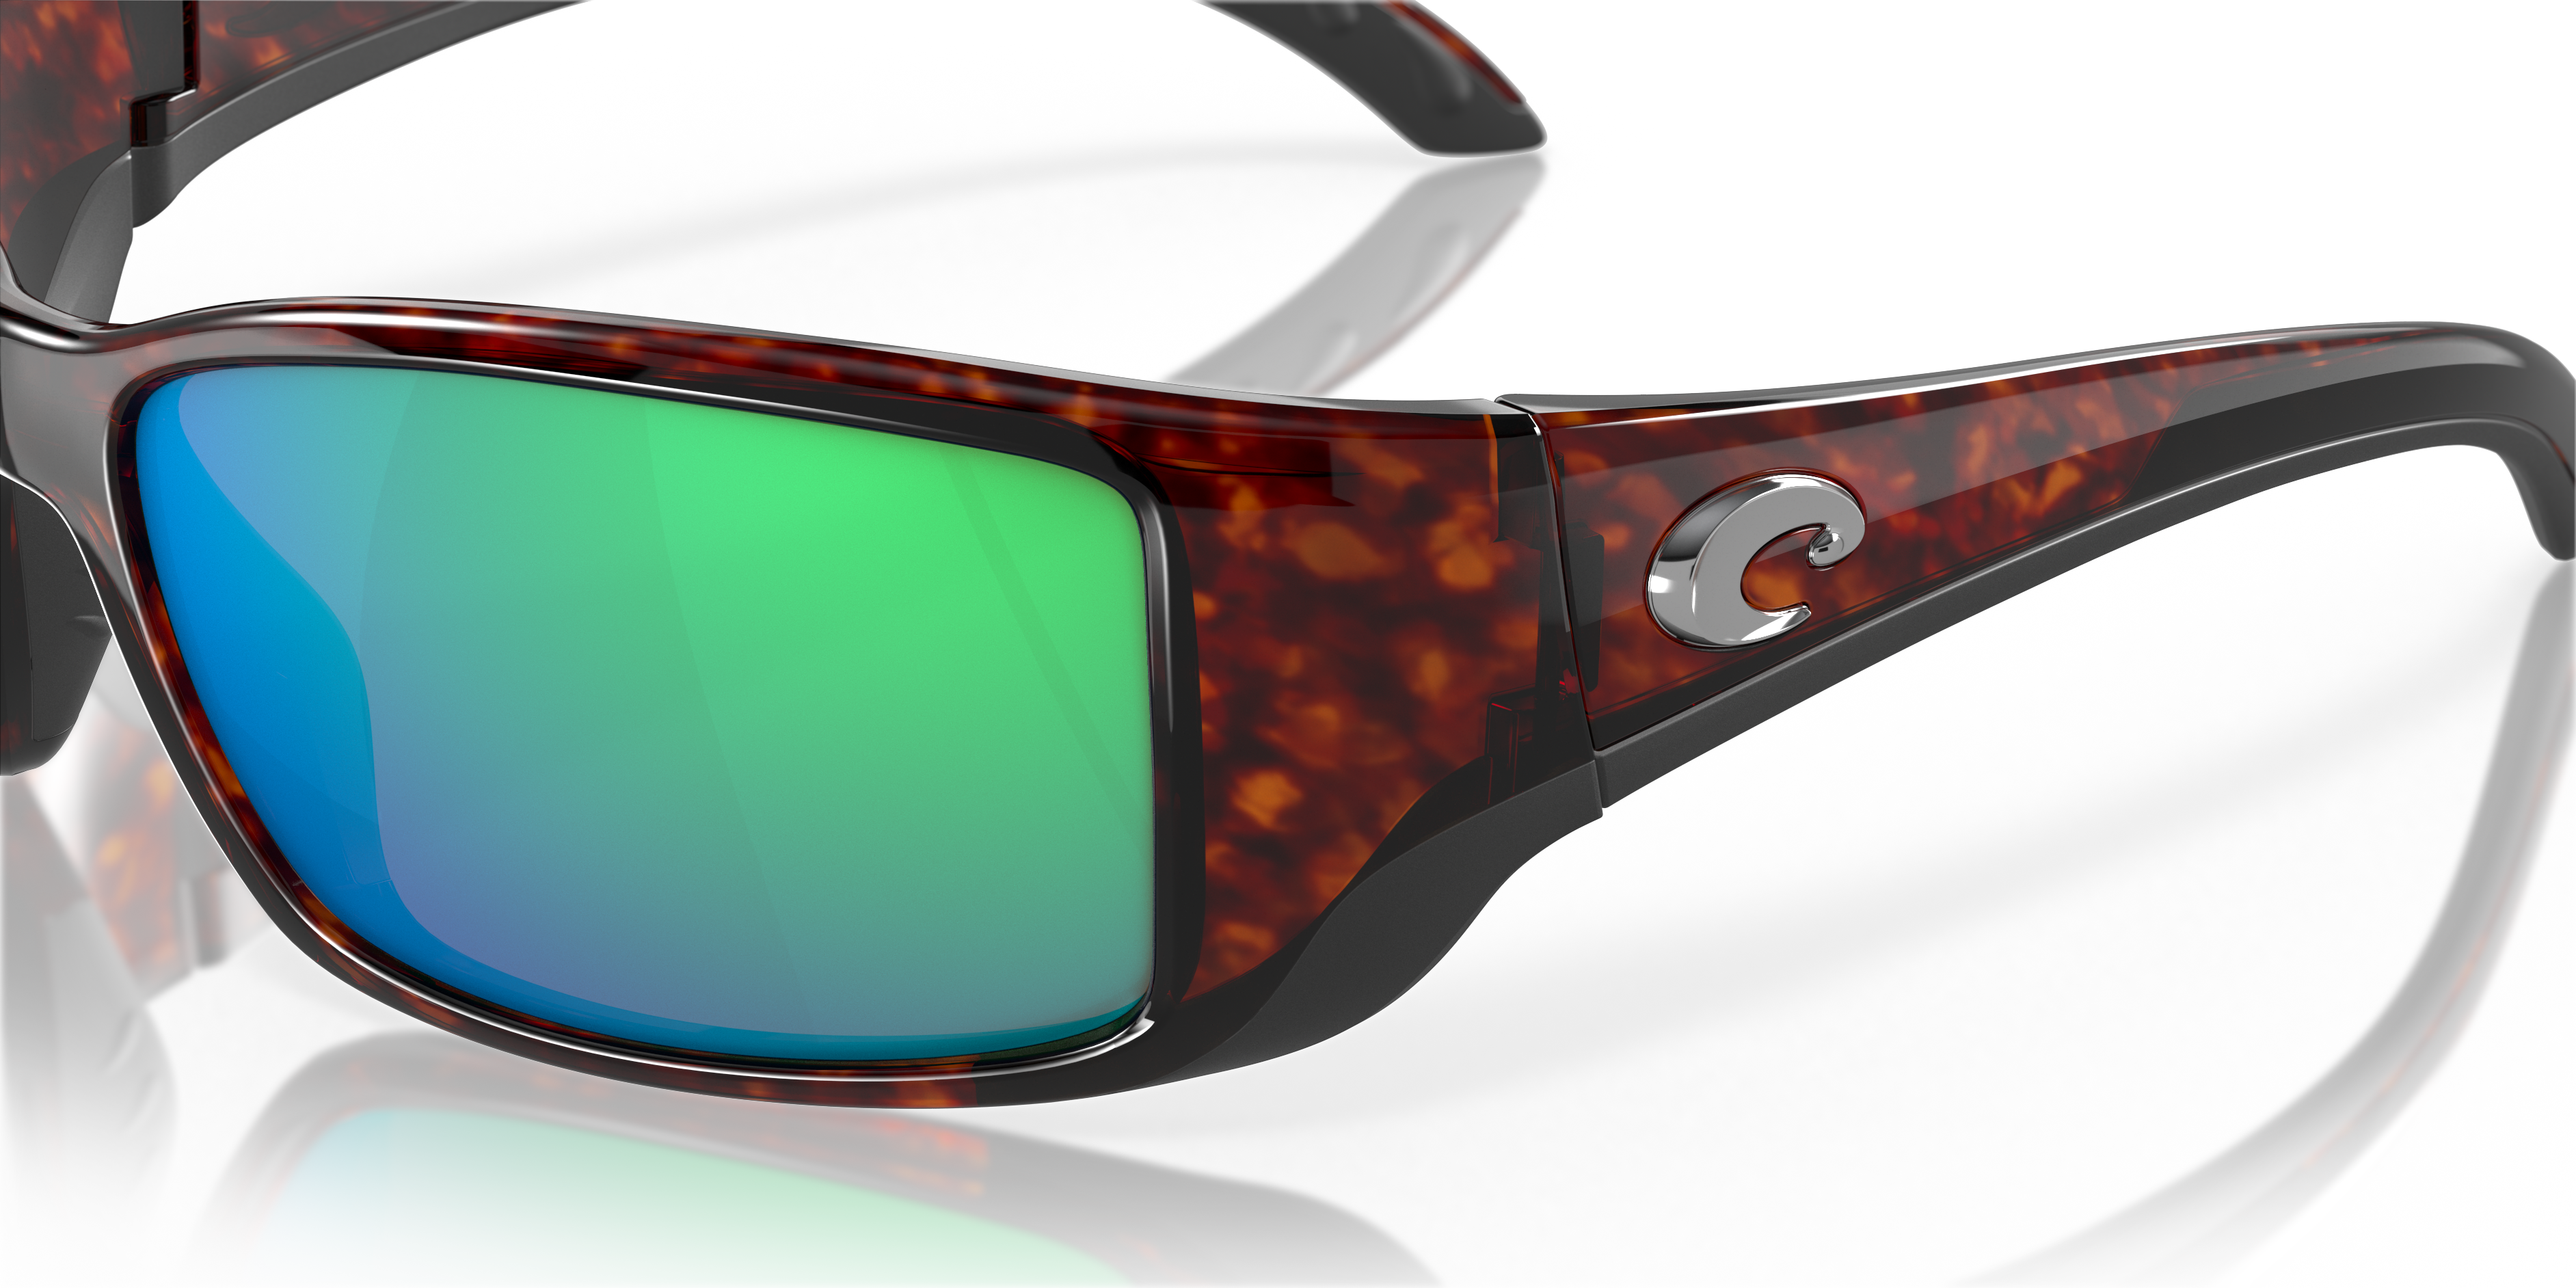 Costa Del Mar Blackfin Sunglasses 